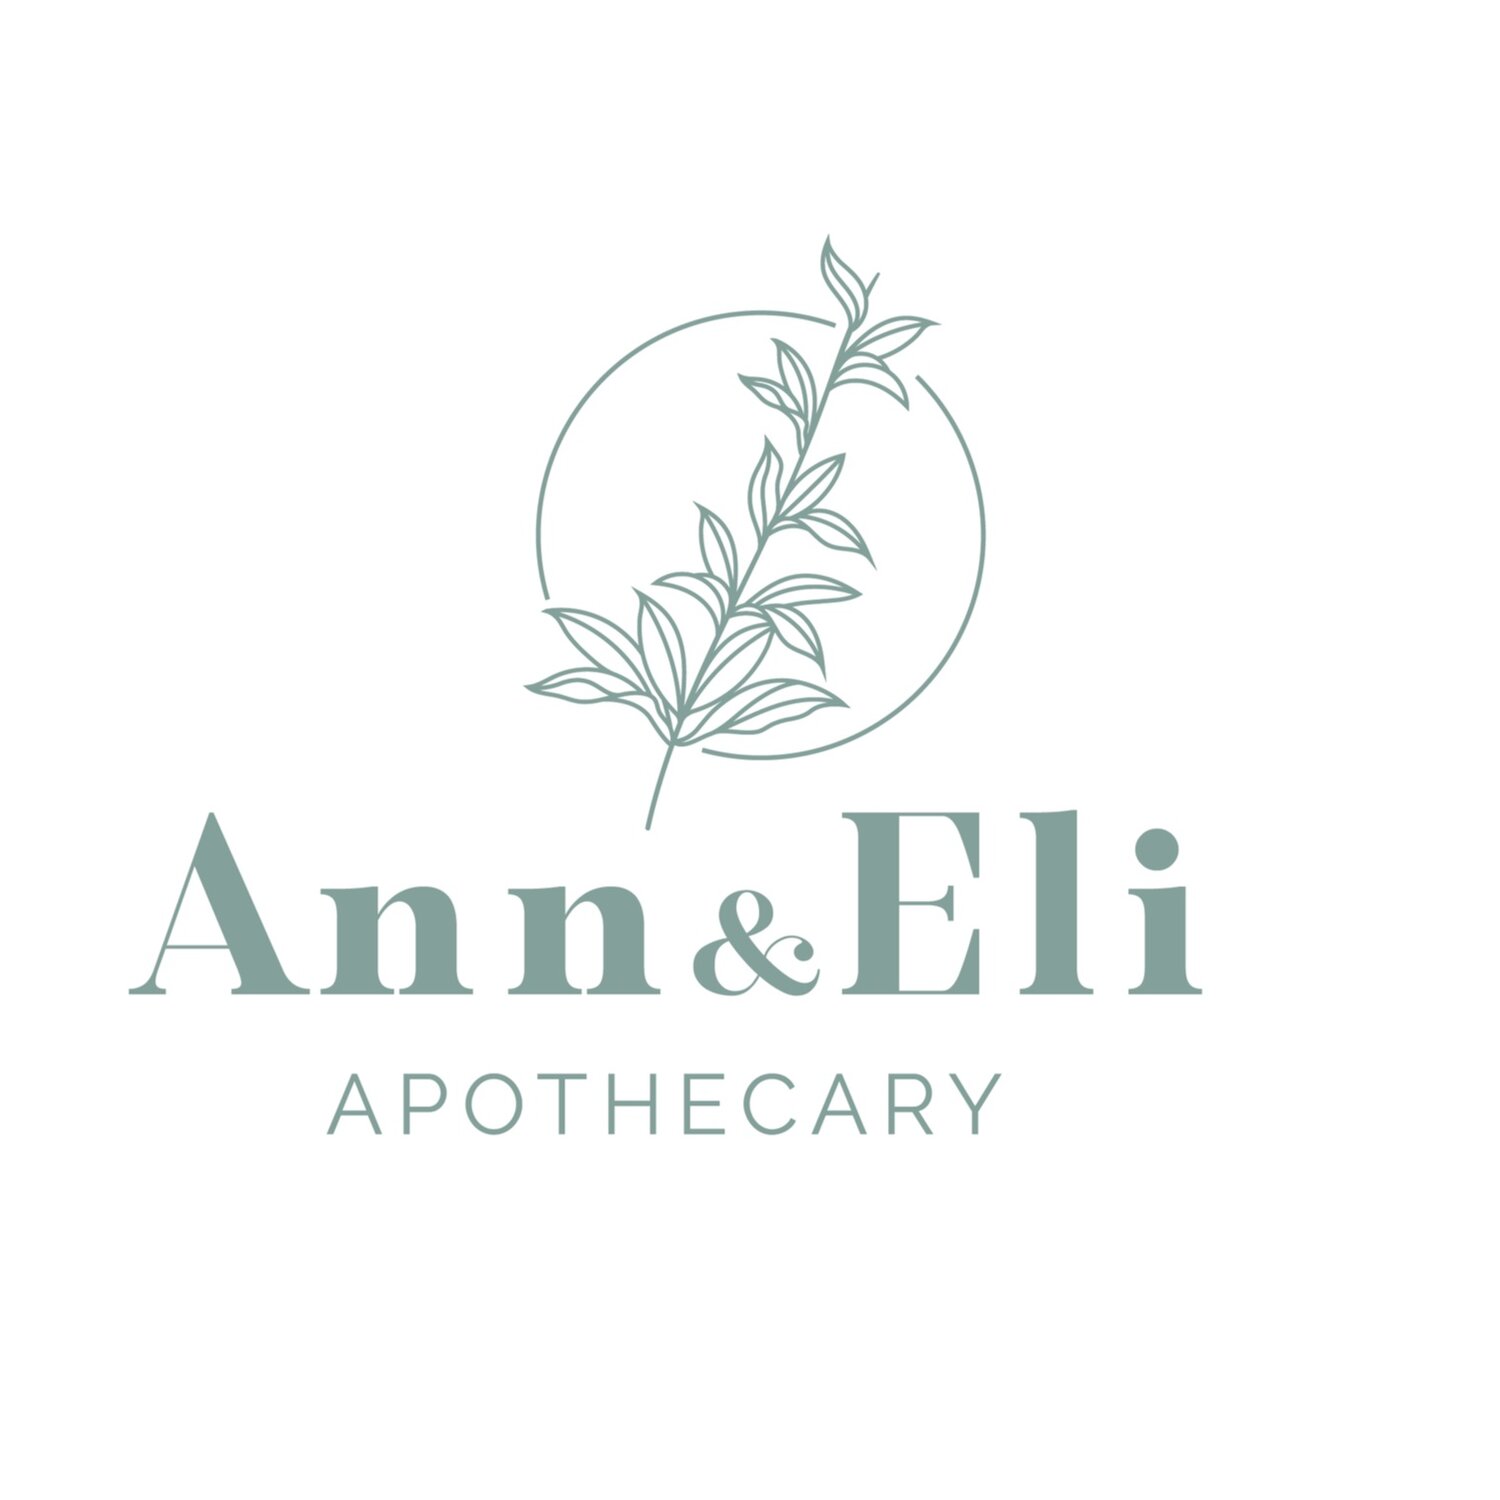 Ann & Eli Apothecary